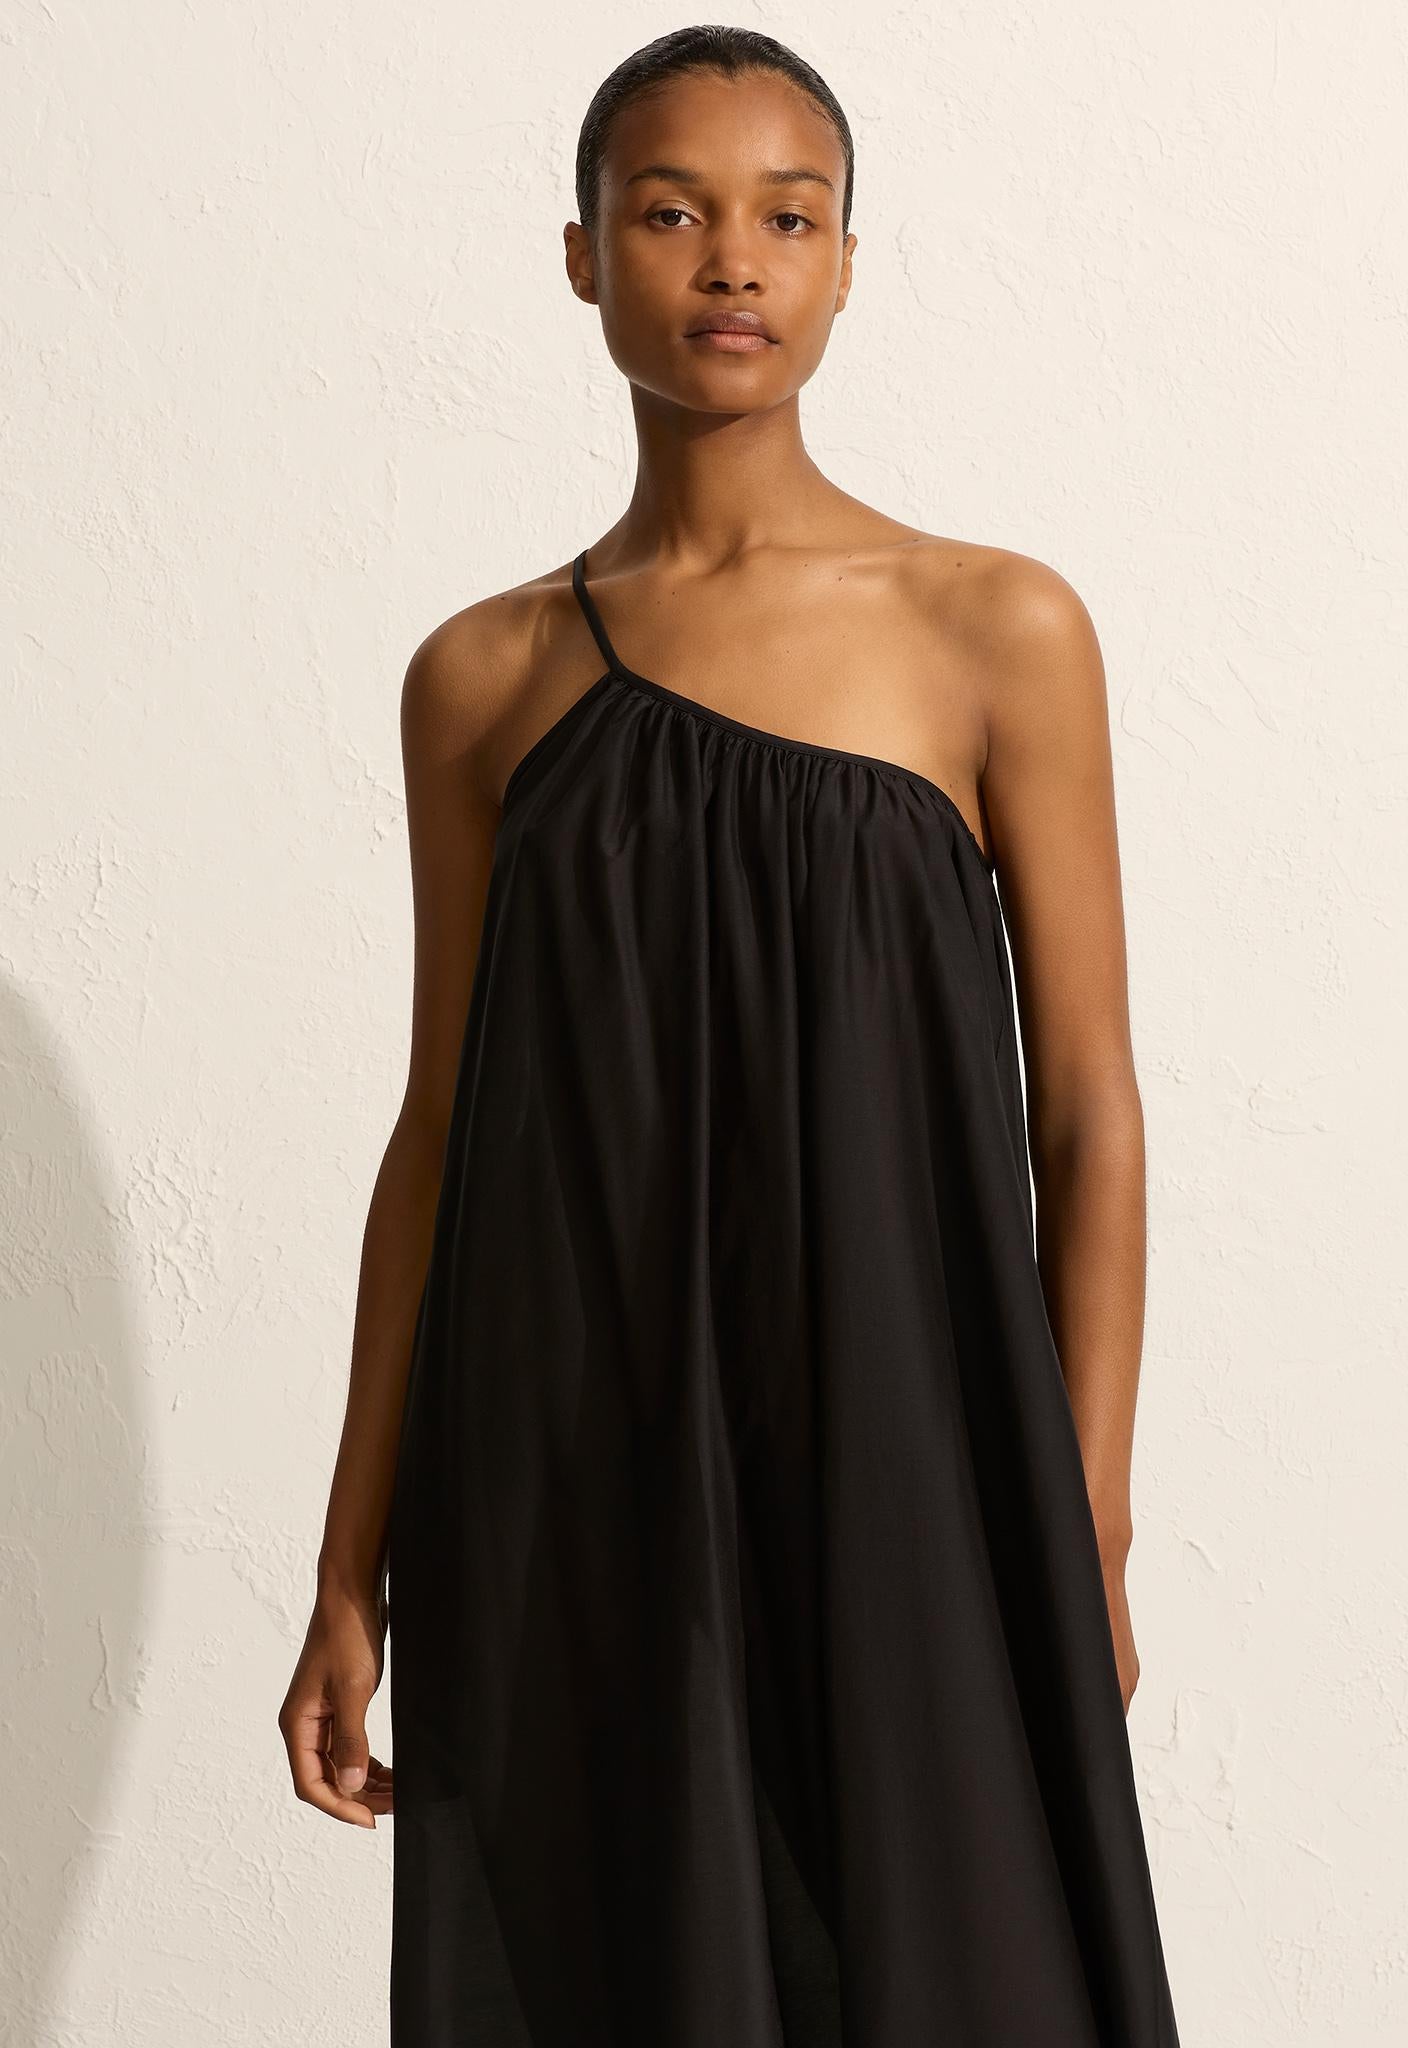 Voluminous One Shoulder Dress - Black - Matteau